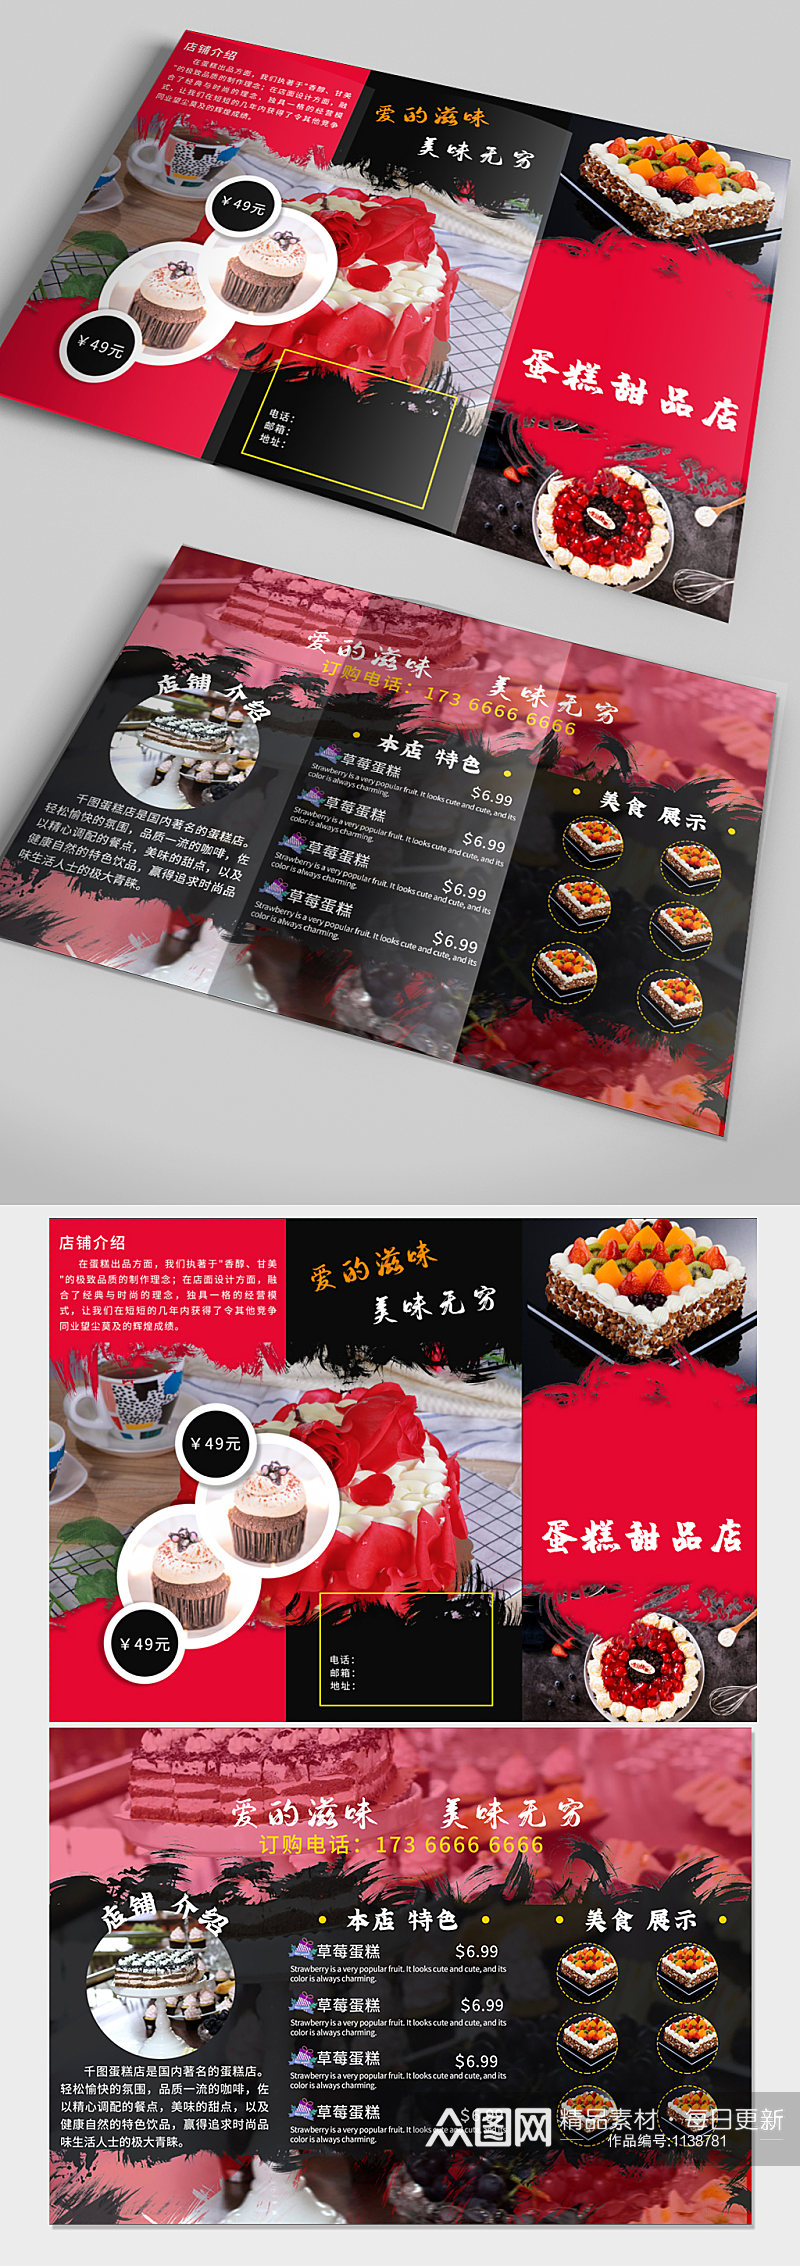 蛋糕甜品店三折页素材